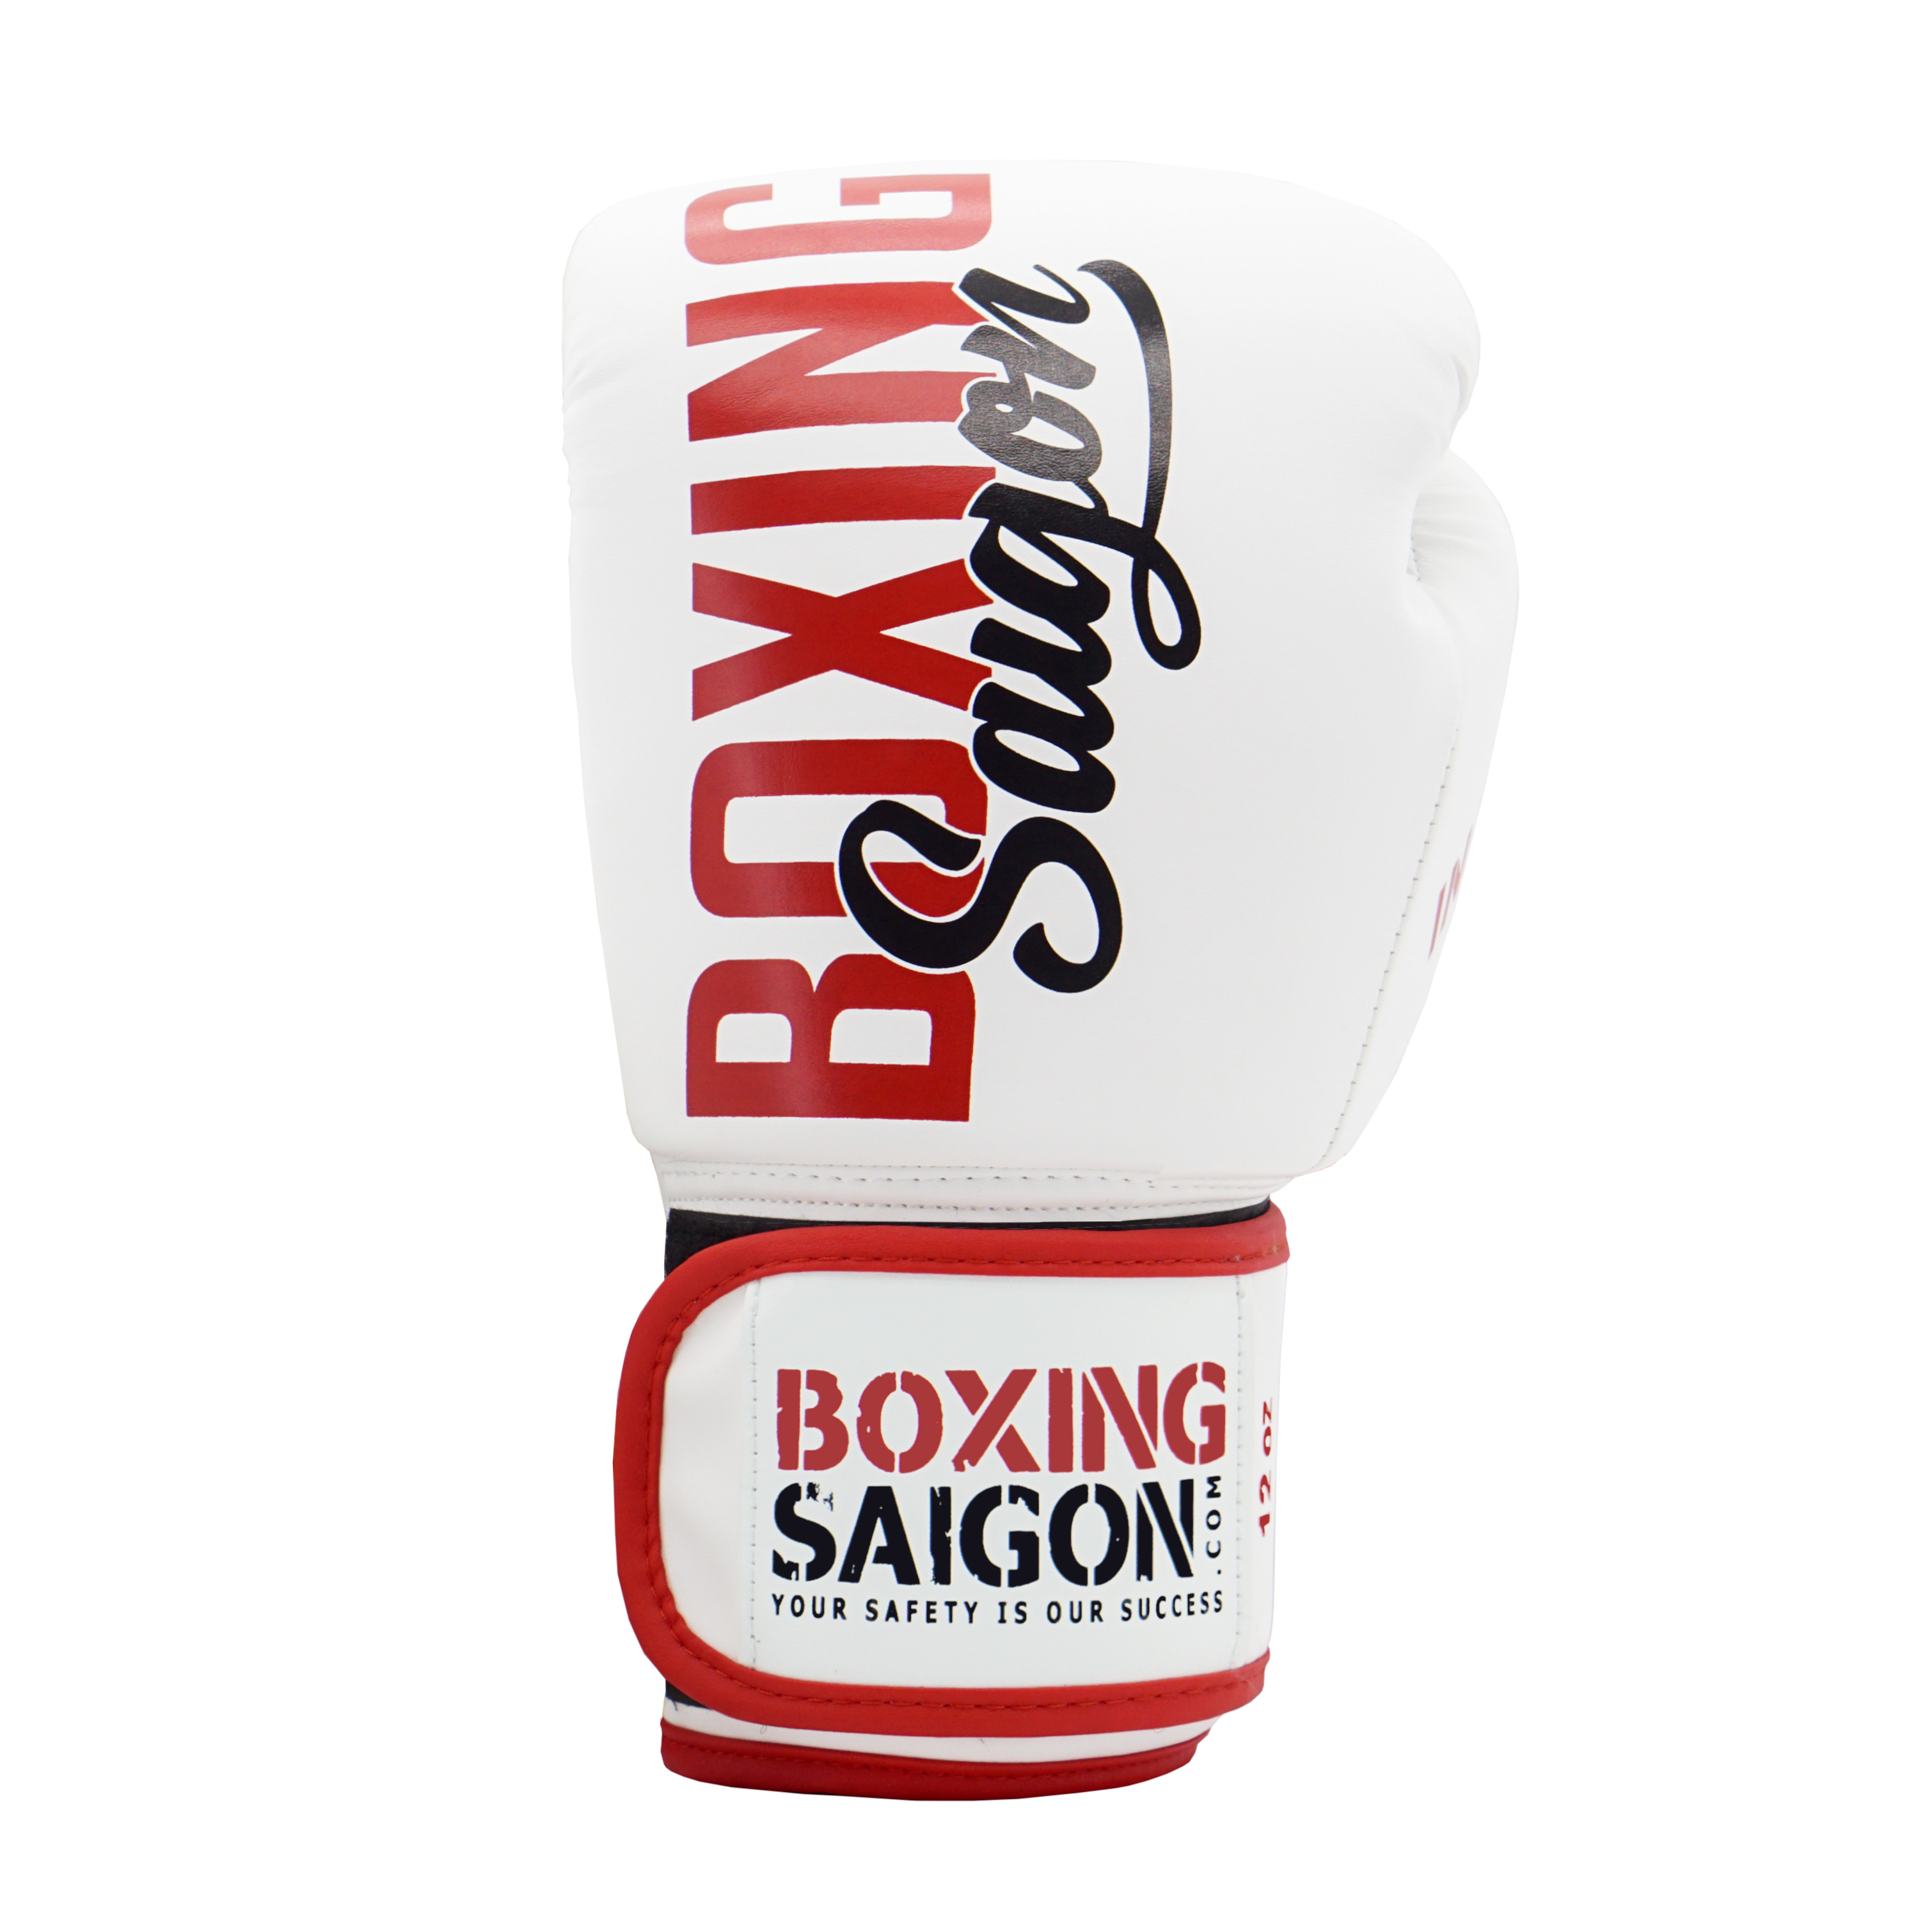 Combo Găng Tay Boxing Saigon + Băng Tay 4m5 (tặng túi rút) - Trắng đỏ